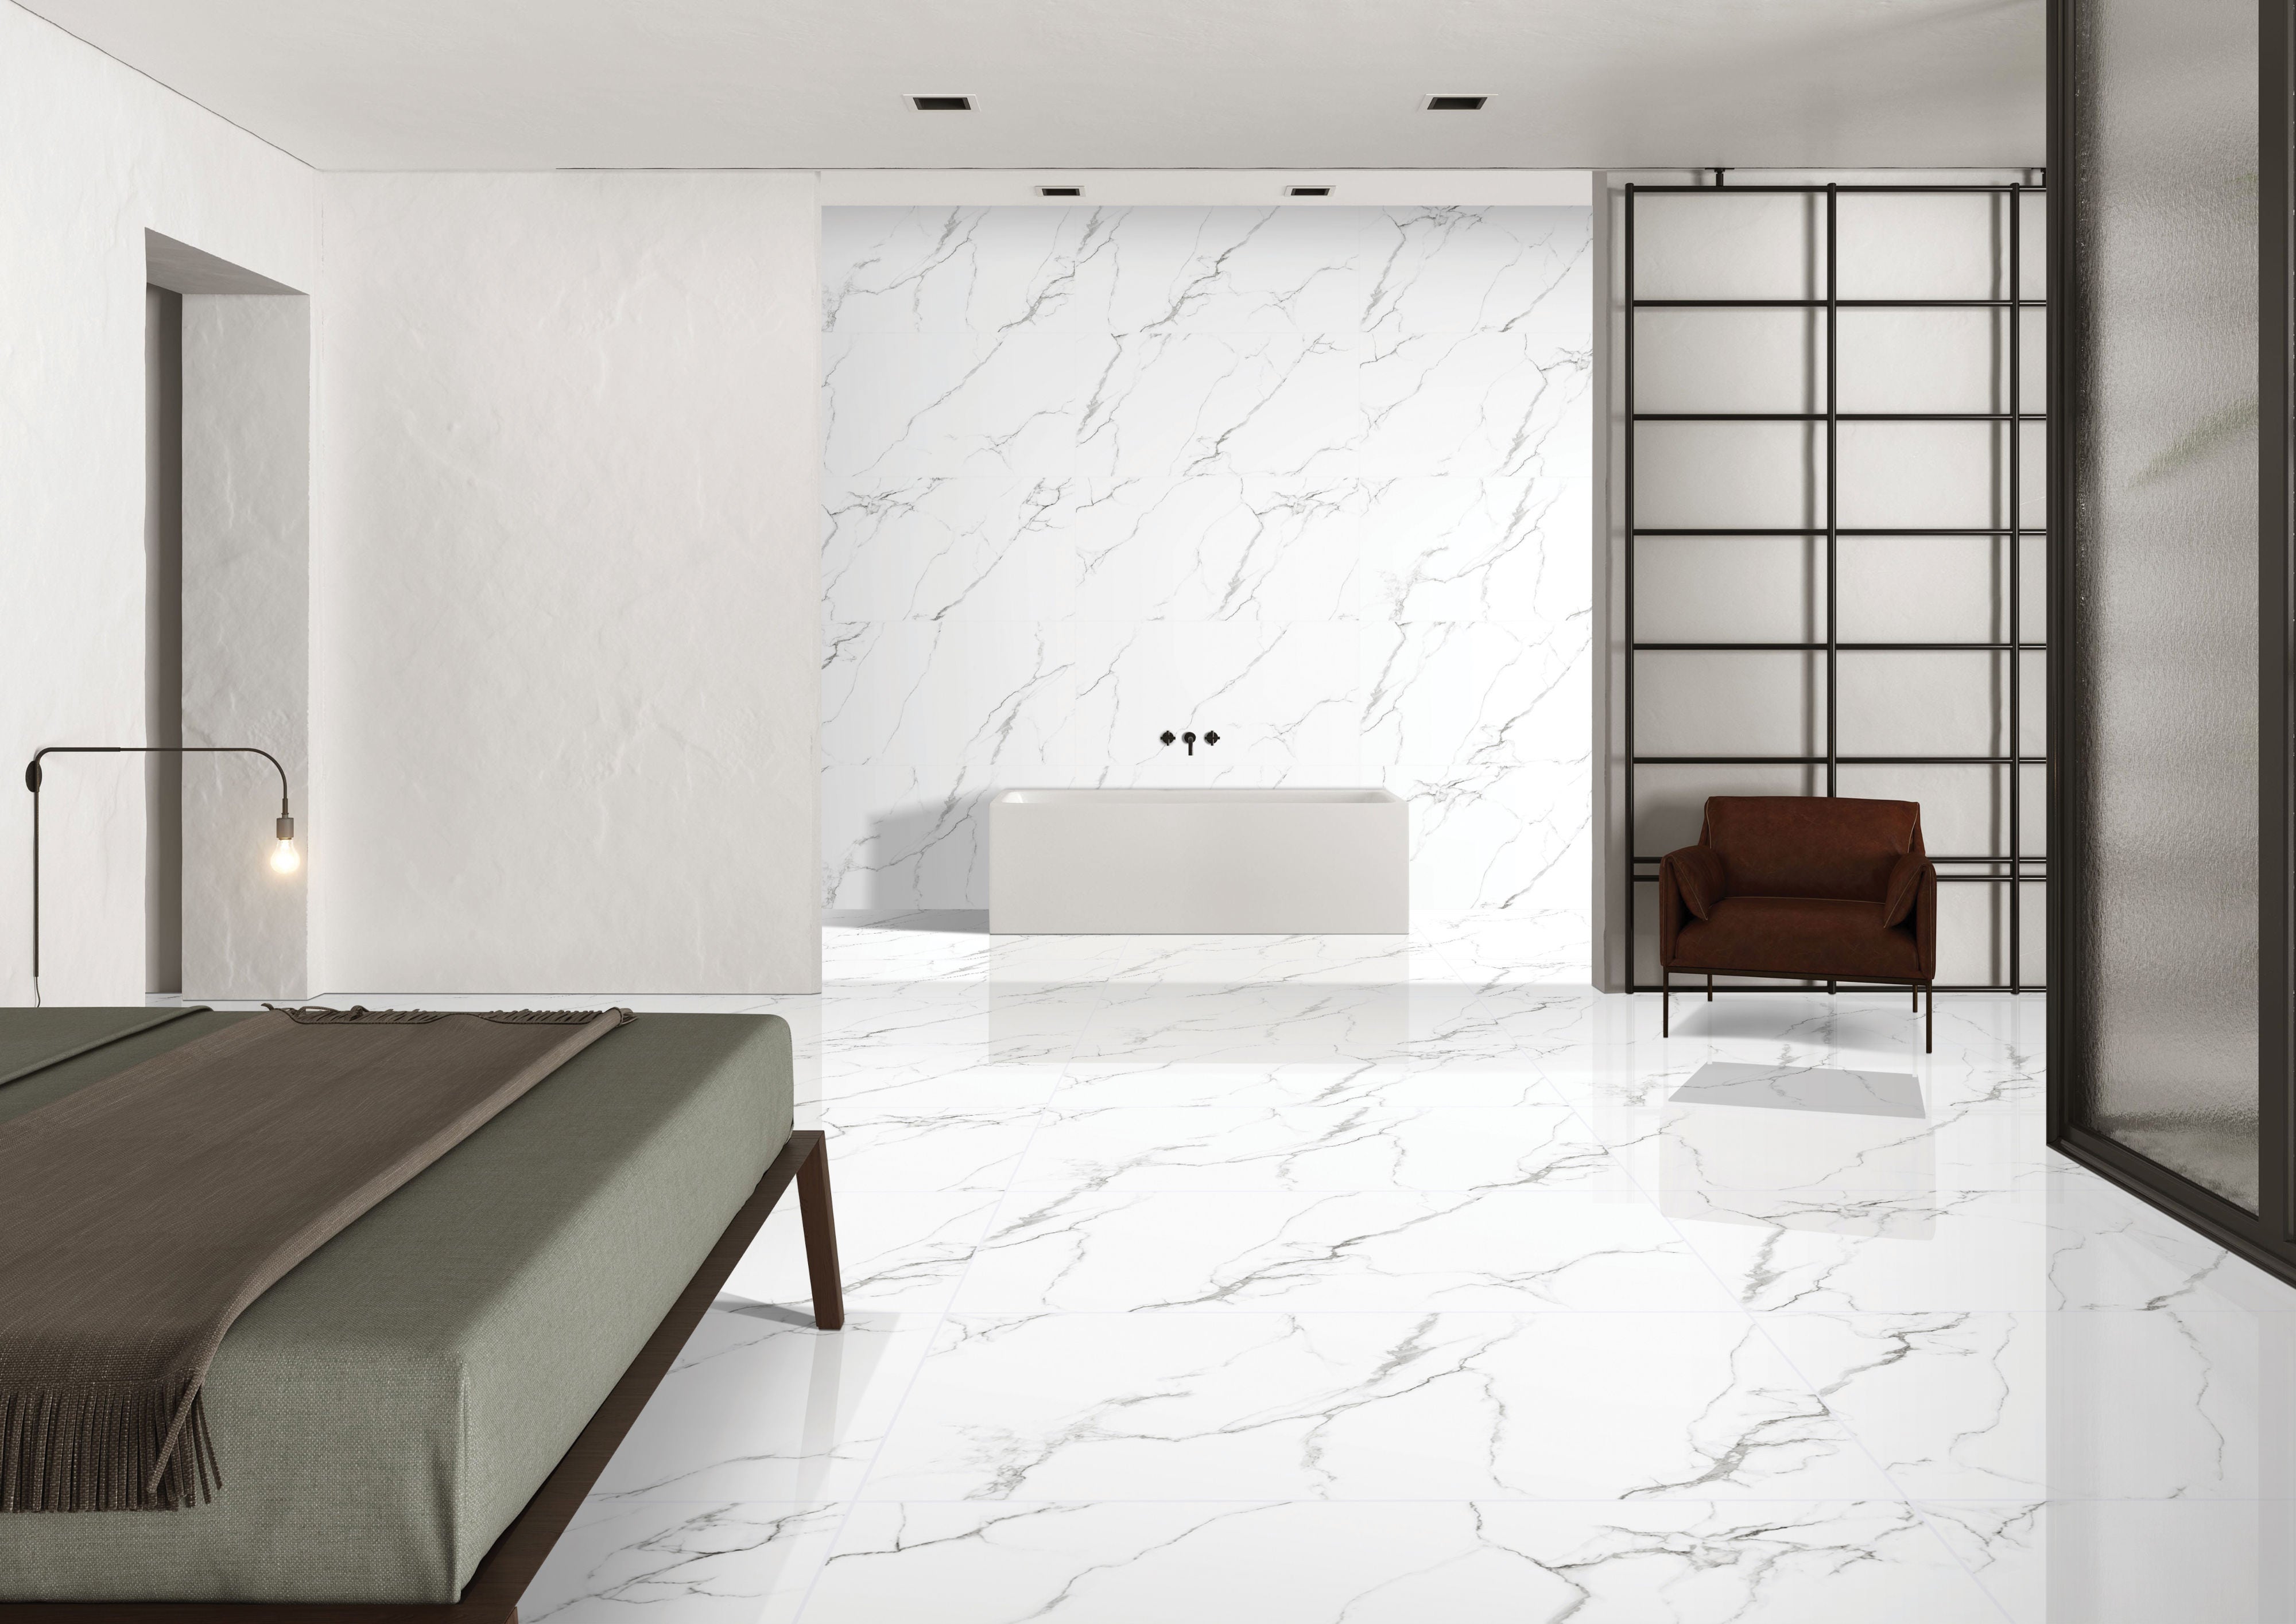 Gresie exterior / interior portelanata McKinley, alb, lucioasa, rectificata, imitatie marmura, 60 x 120 cm